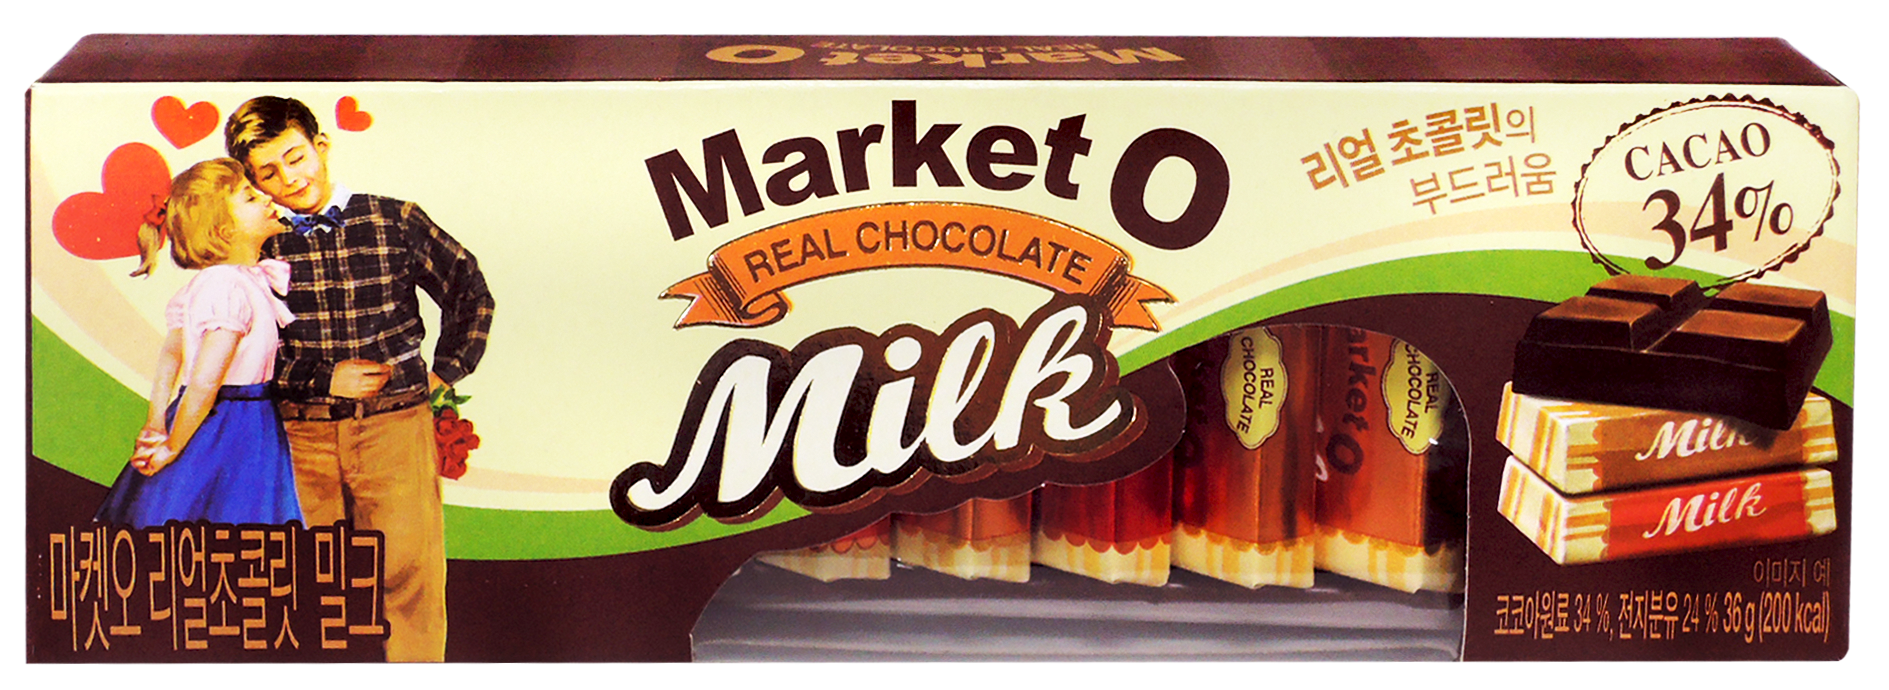 【ORION好麗友】Market O經典牛奶巧克力(36g)